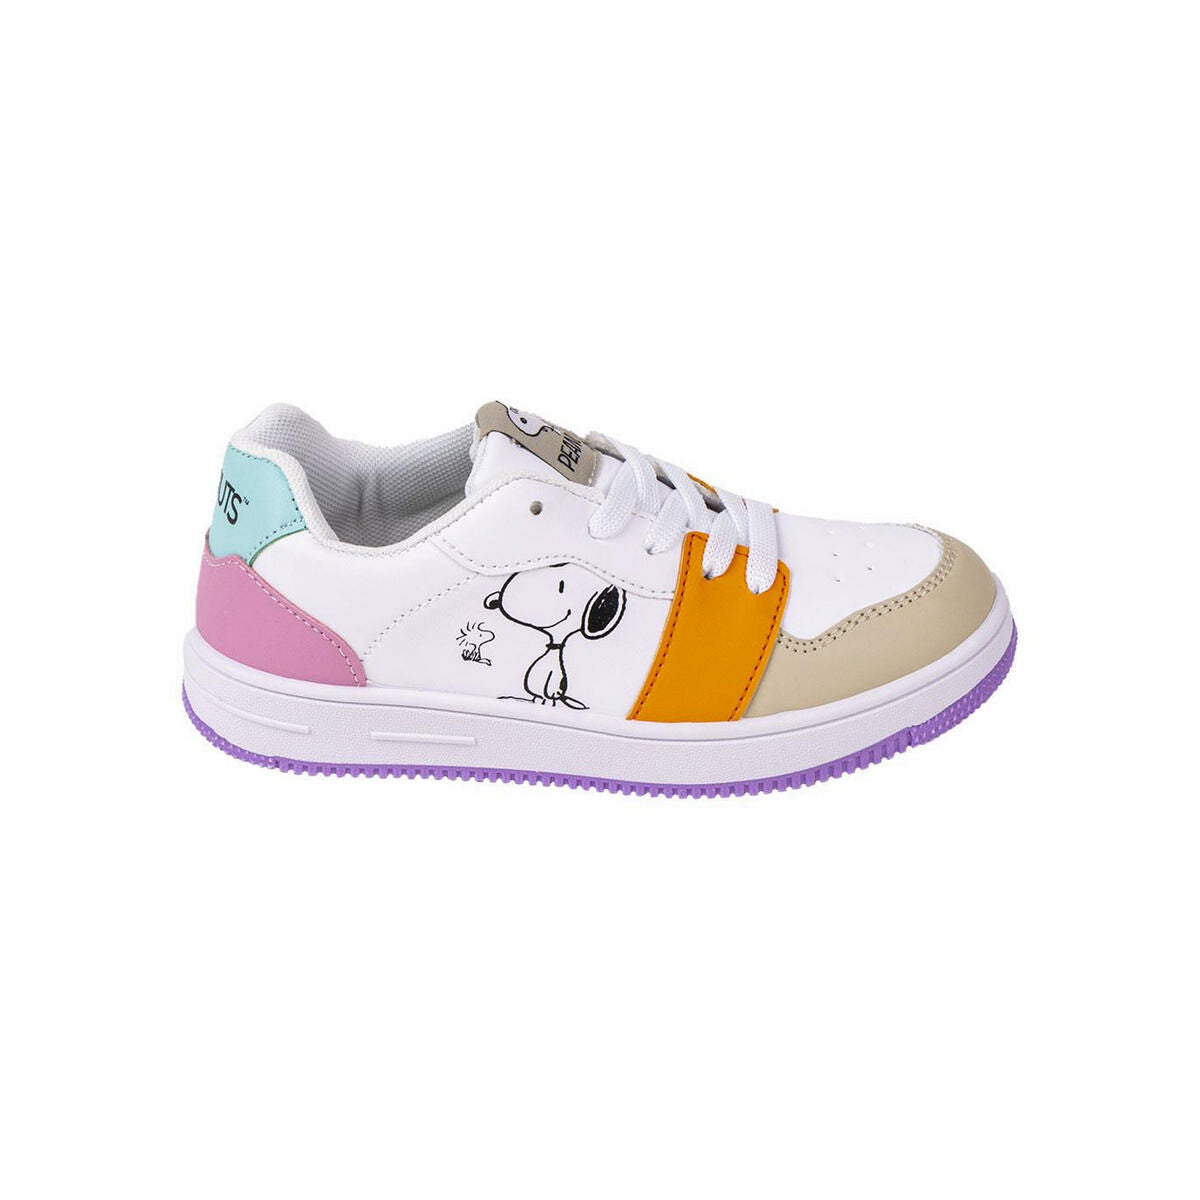 Chaussures de Sport pour Enfants Snoopy Multicouleur - Snoopy - Jardin D'Eyden - jardindeyden.fr